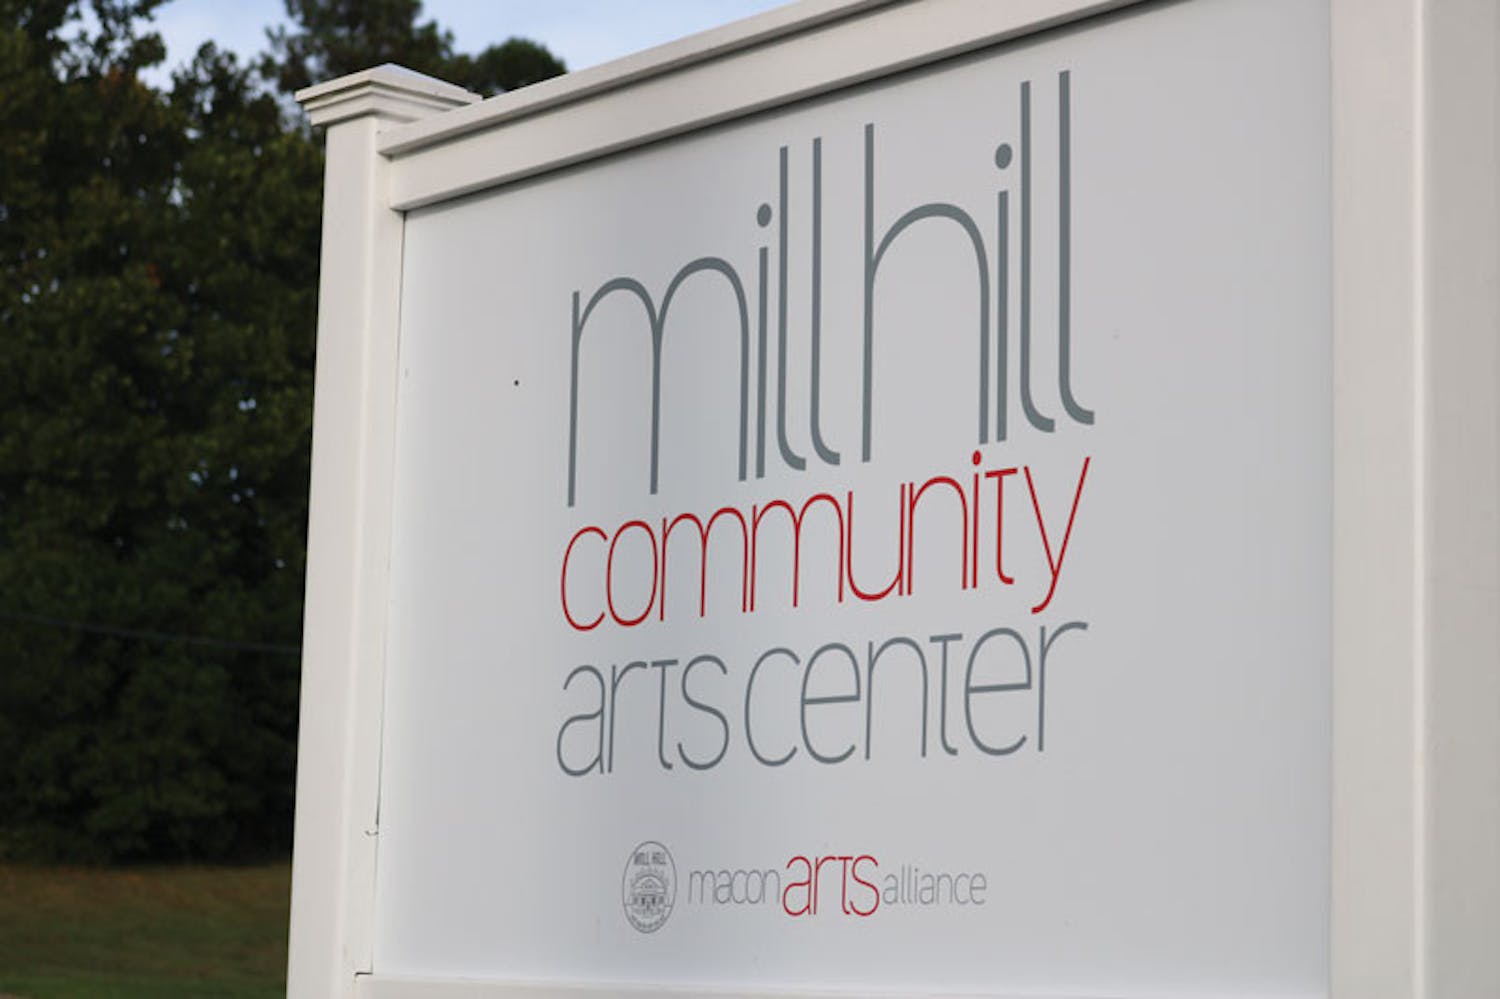 MillHill1